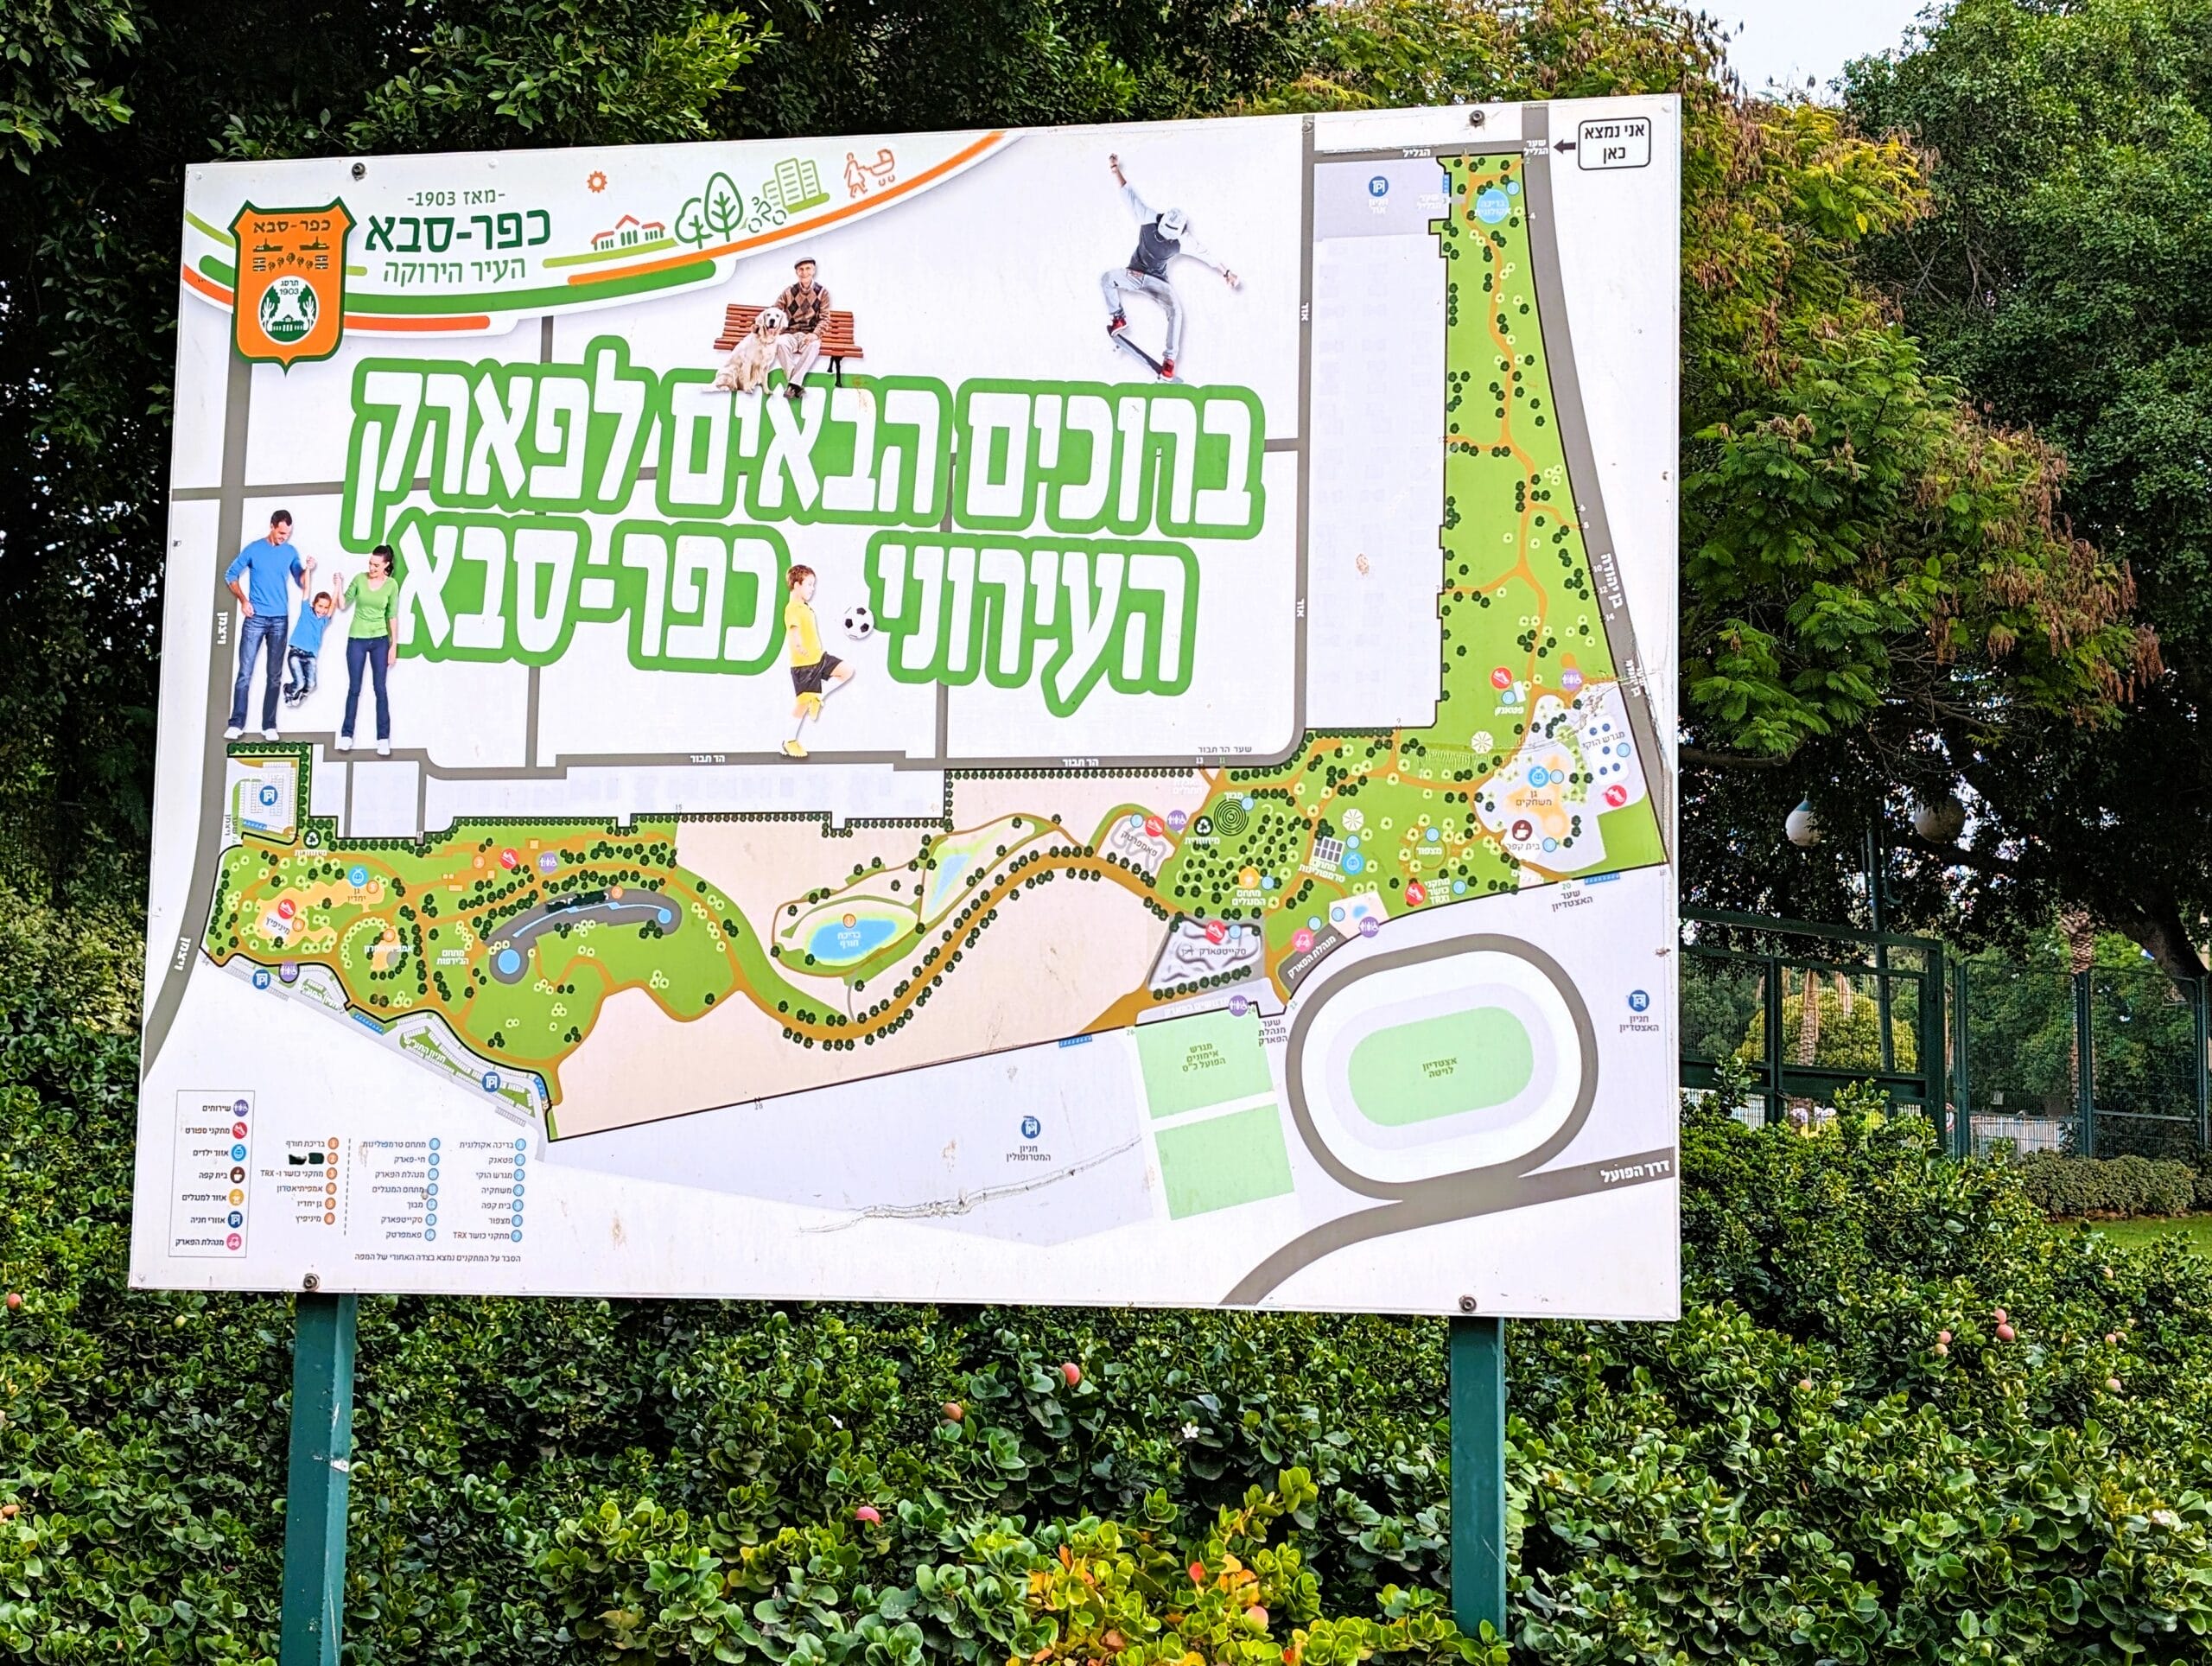 מפת פארק כפר סבא, צילום: ד"ר ענת אביטל